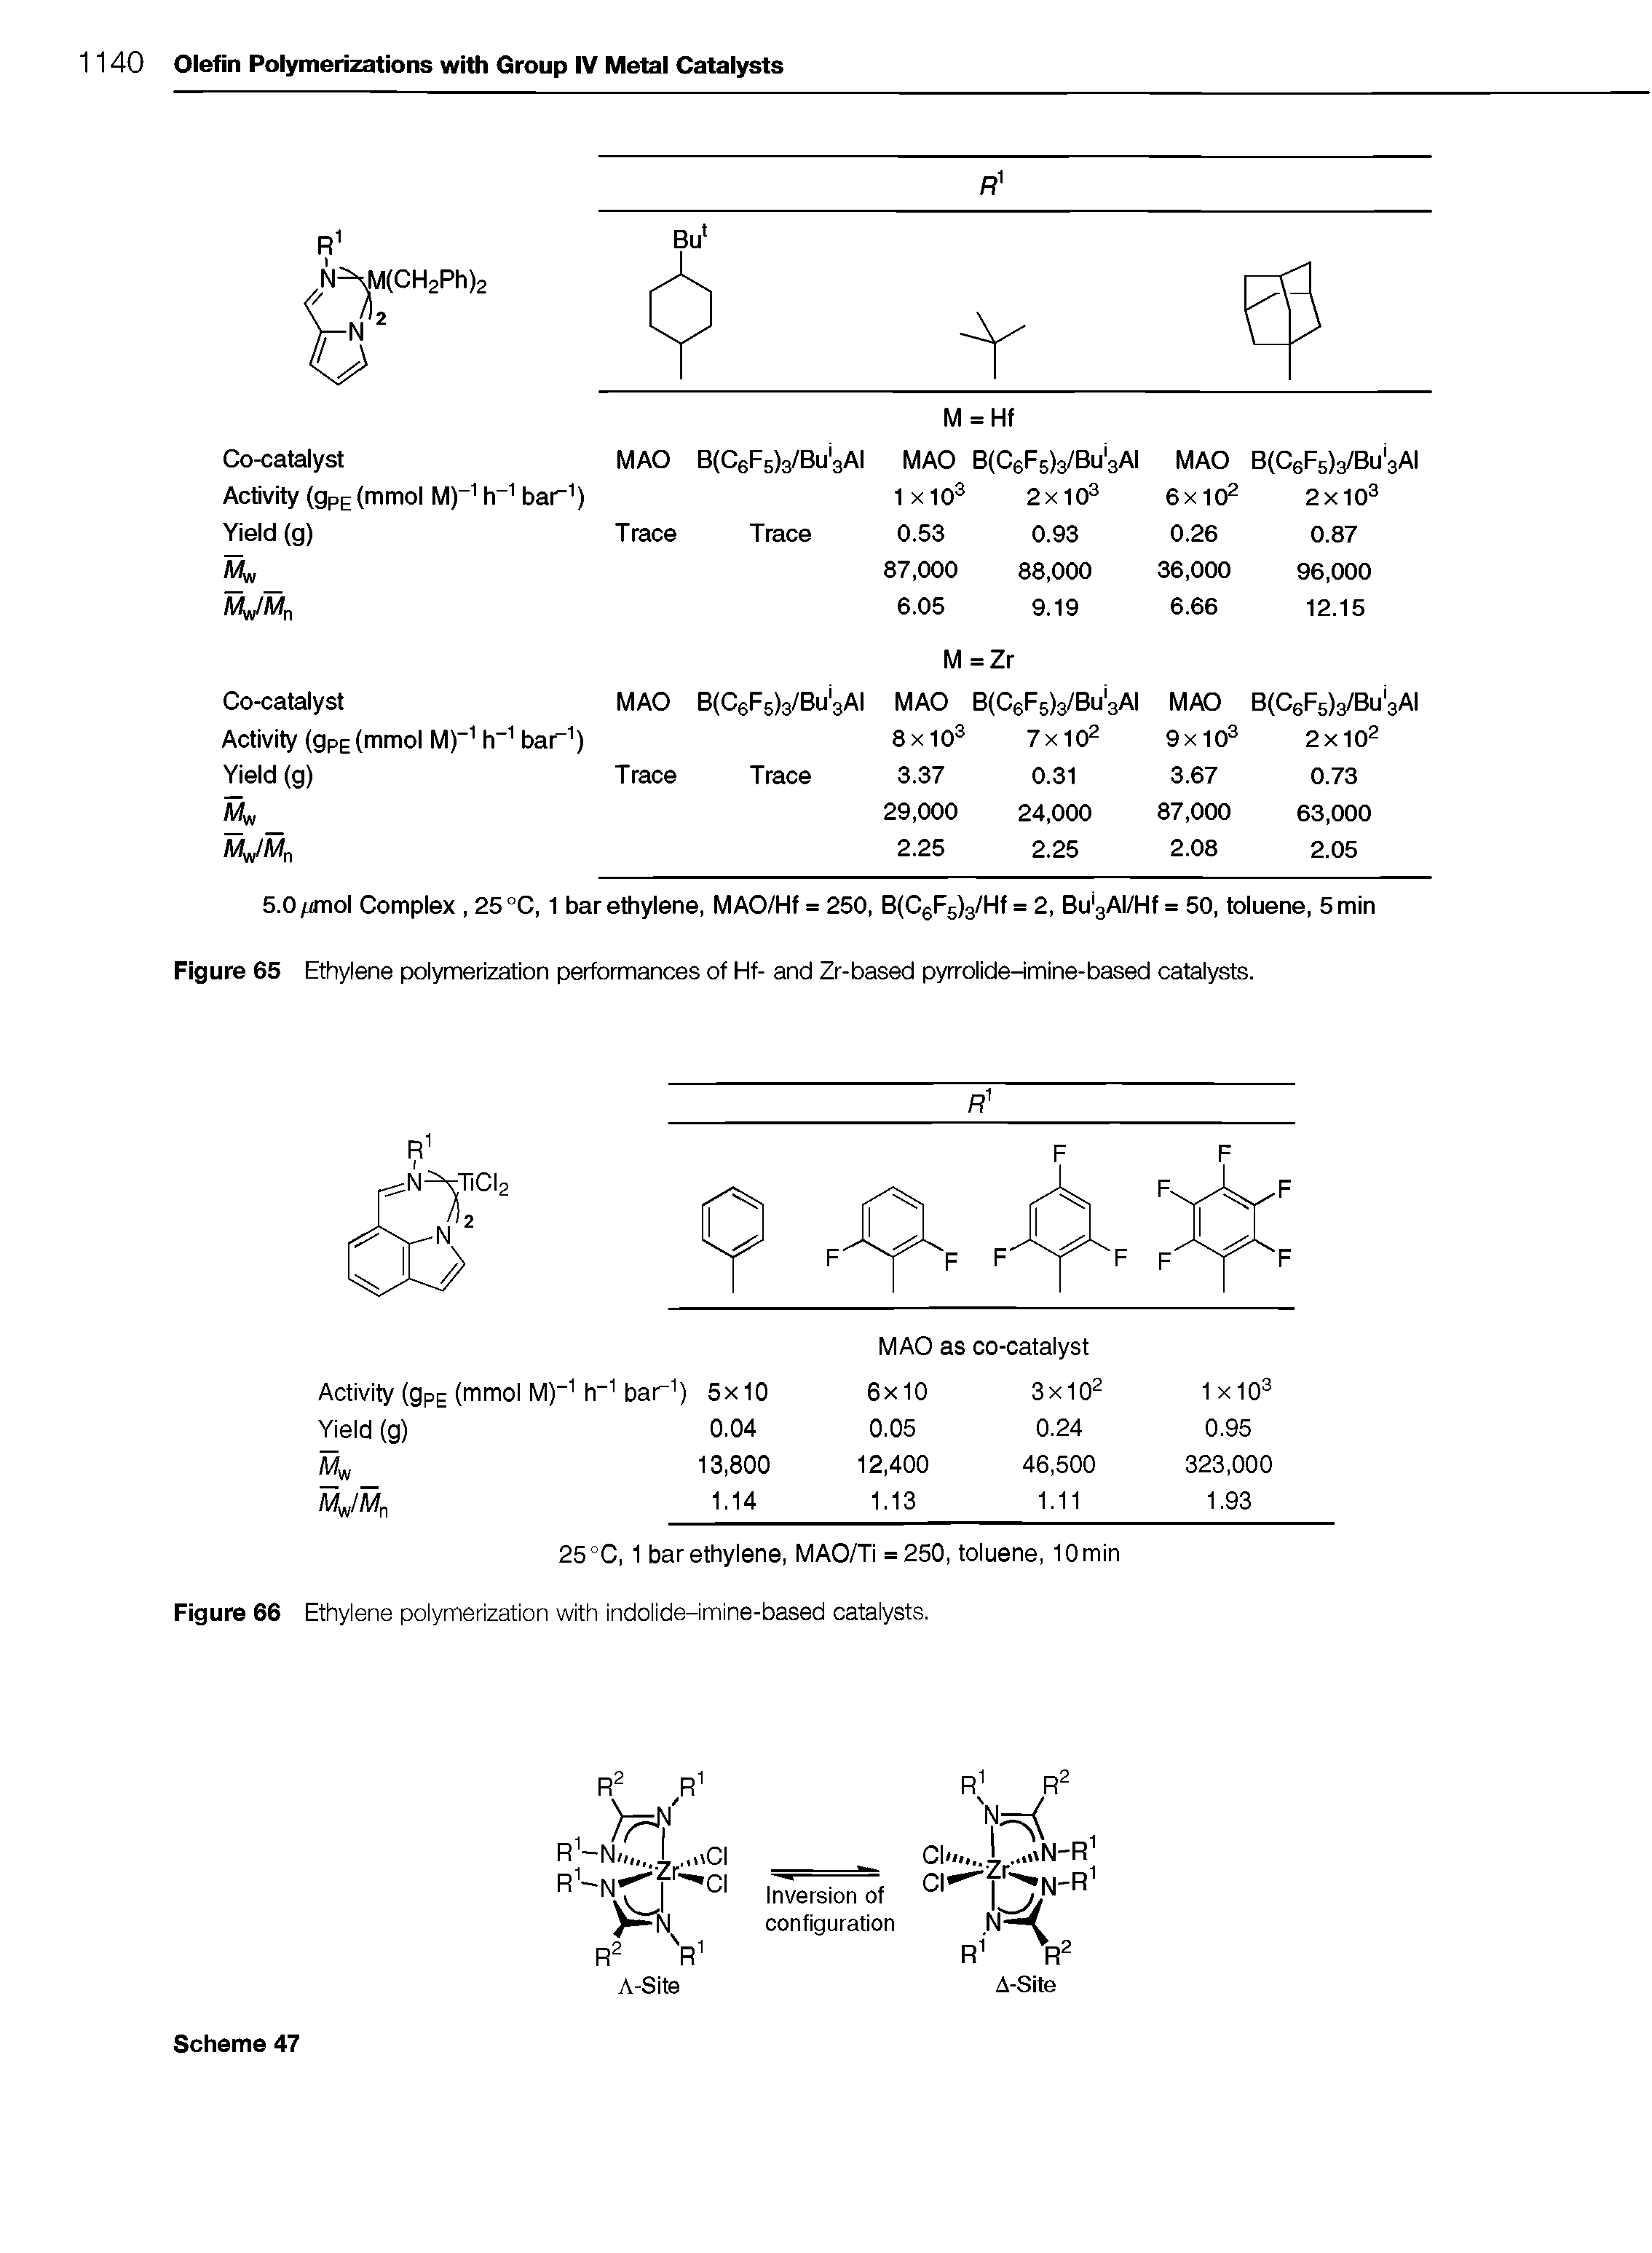 Figure 66 Ethylene polymerization with indolide-imine-based catalysts.